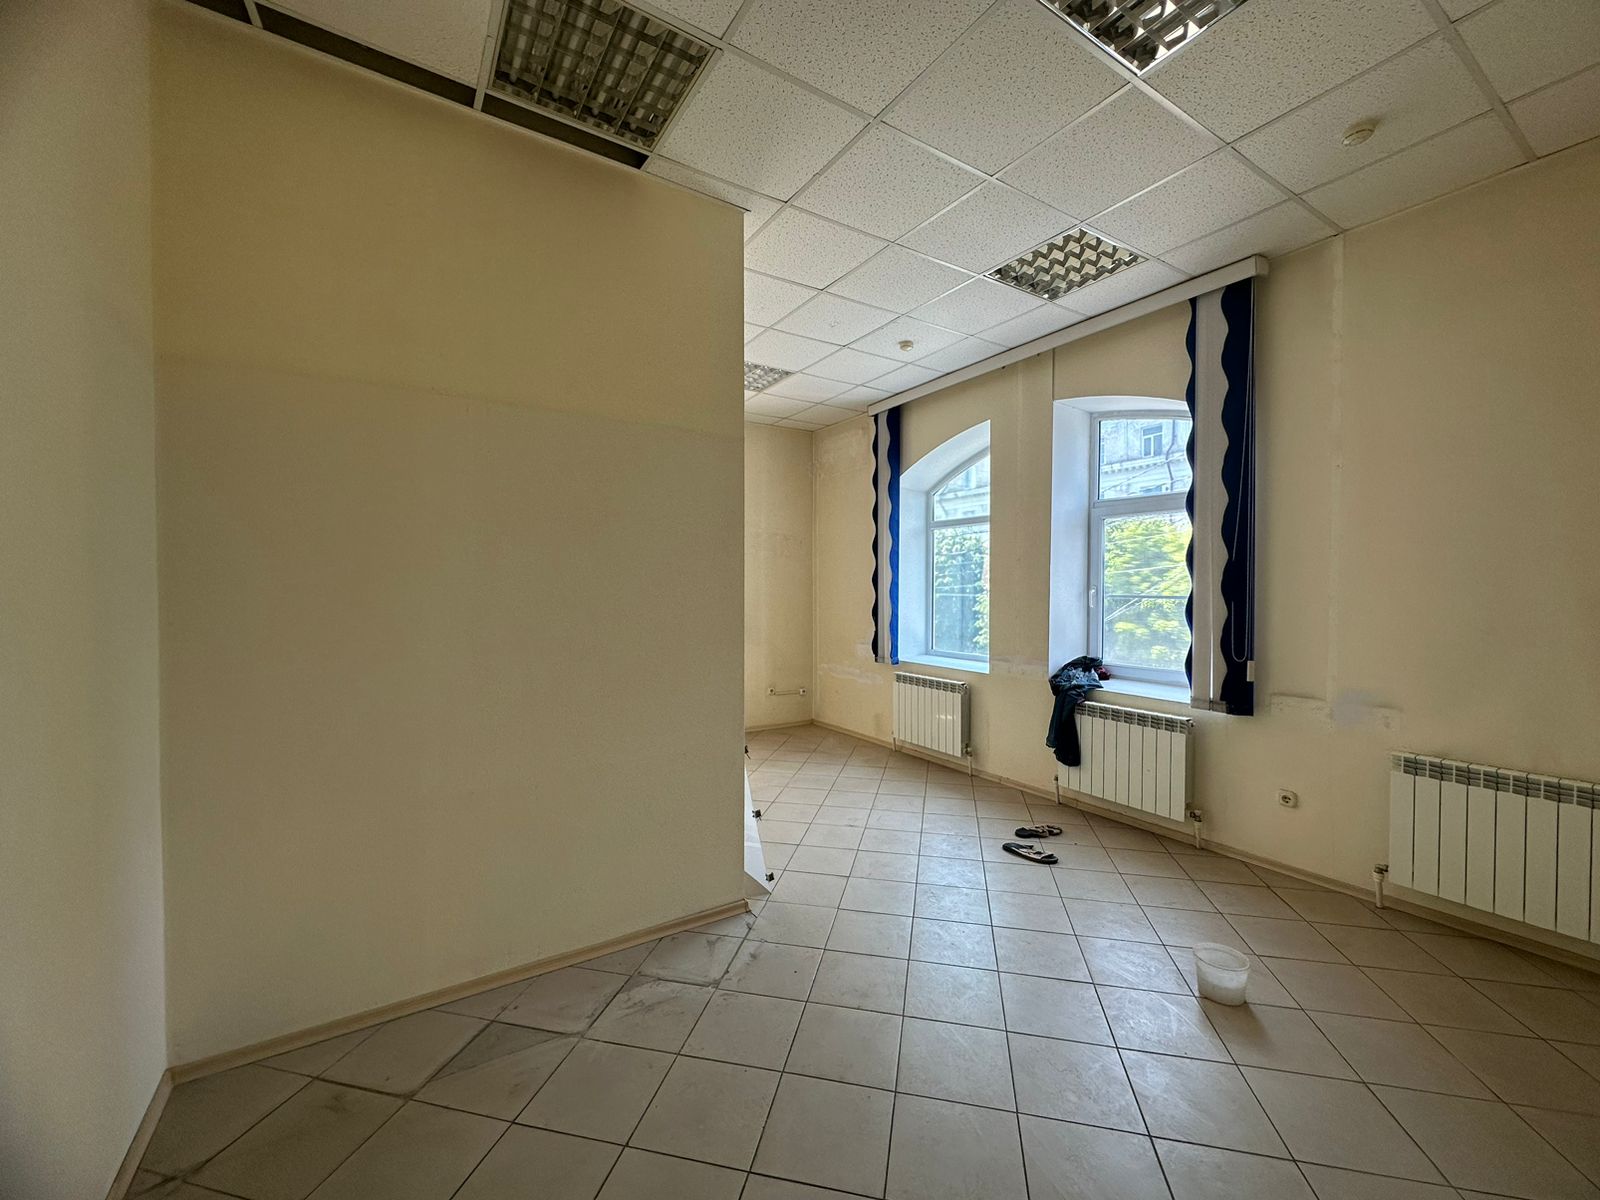 Предлагаем к аренде офисы на 2ом этаже по ул. Карла Маркса д.53, площадью  9 м², напрямую от собственника._6